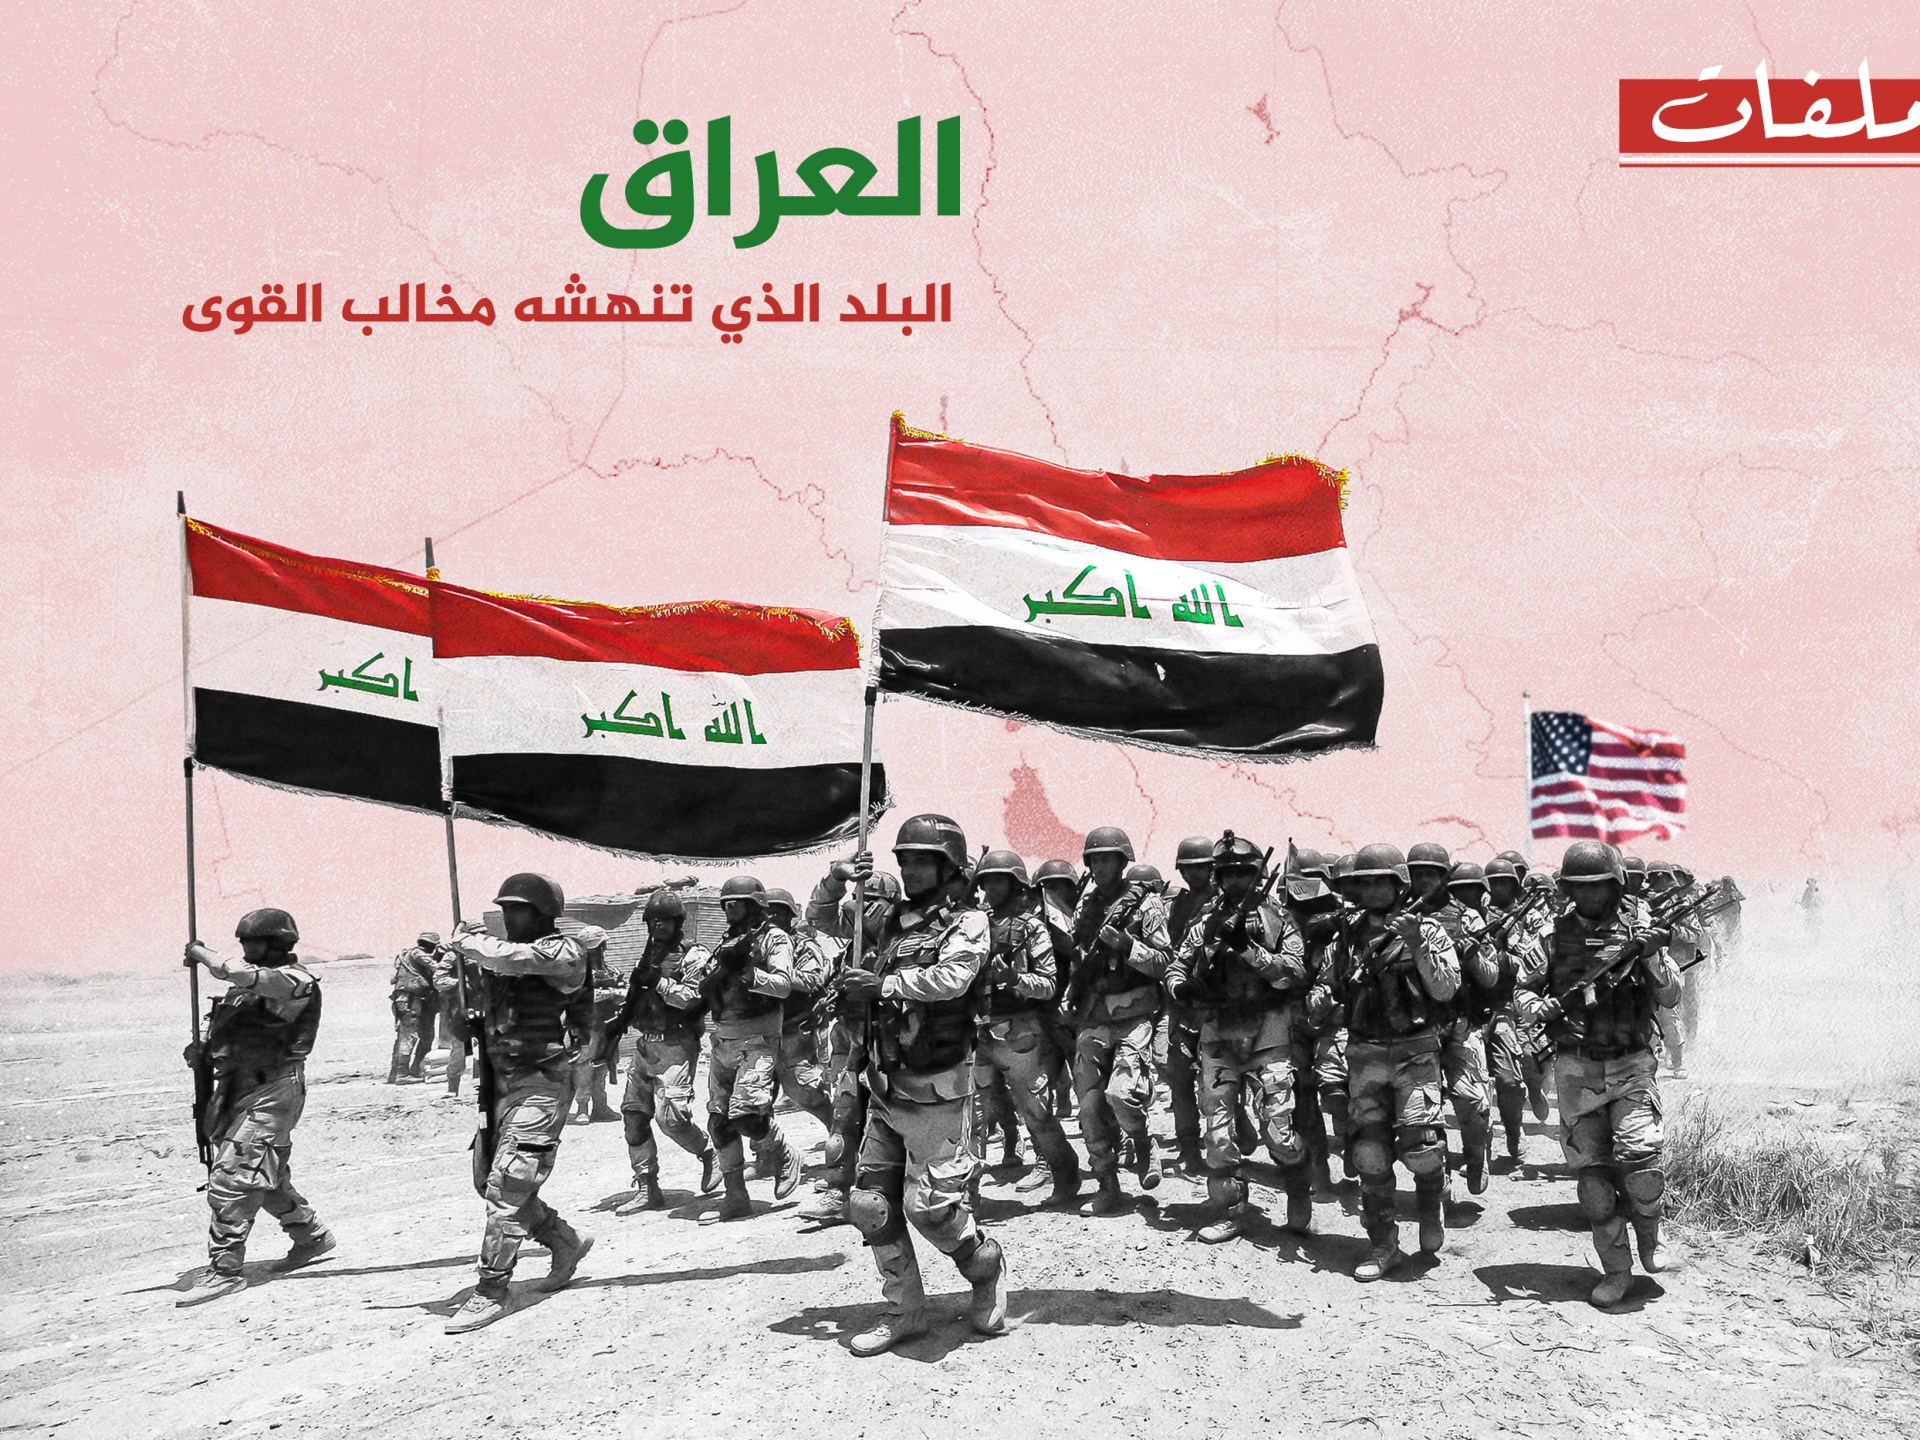 العراق: البلد الذي تنهشه مخالب القوى | سياسة – البوكس نيوز